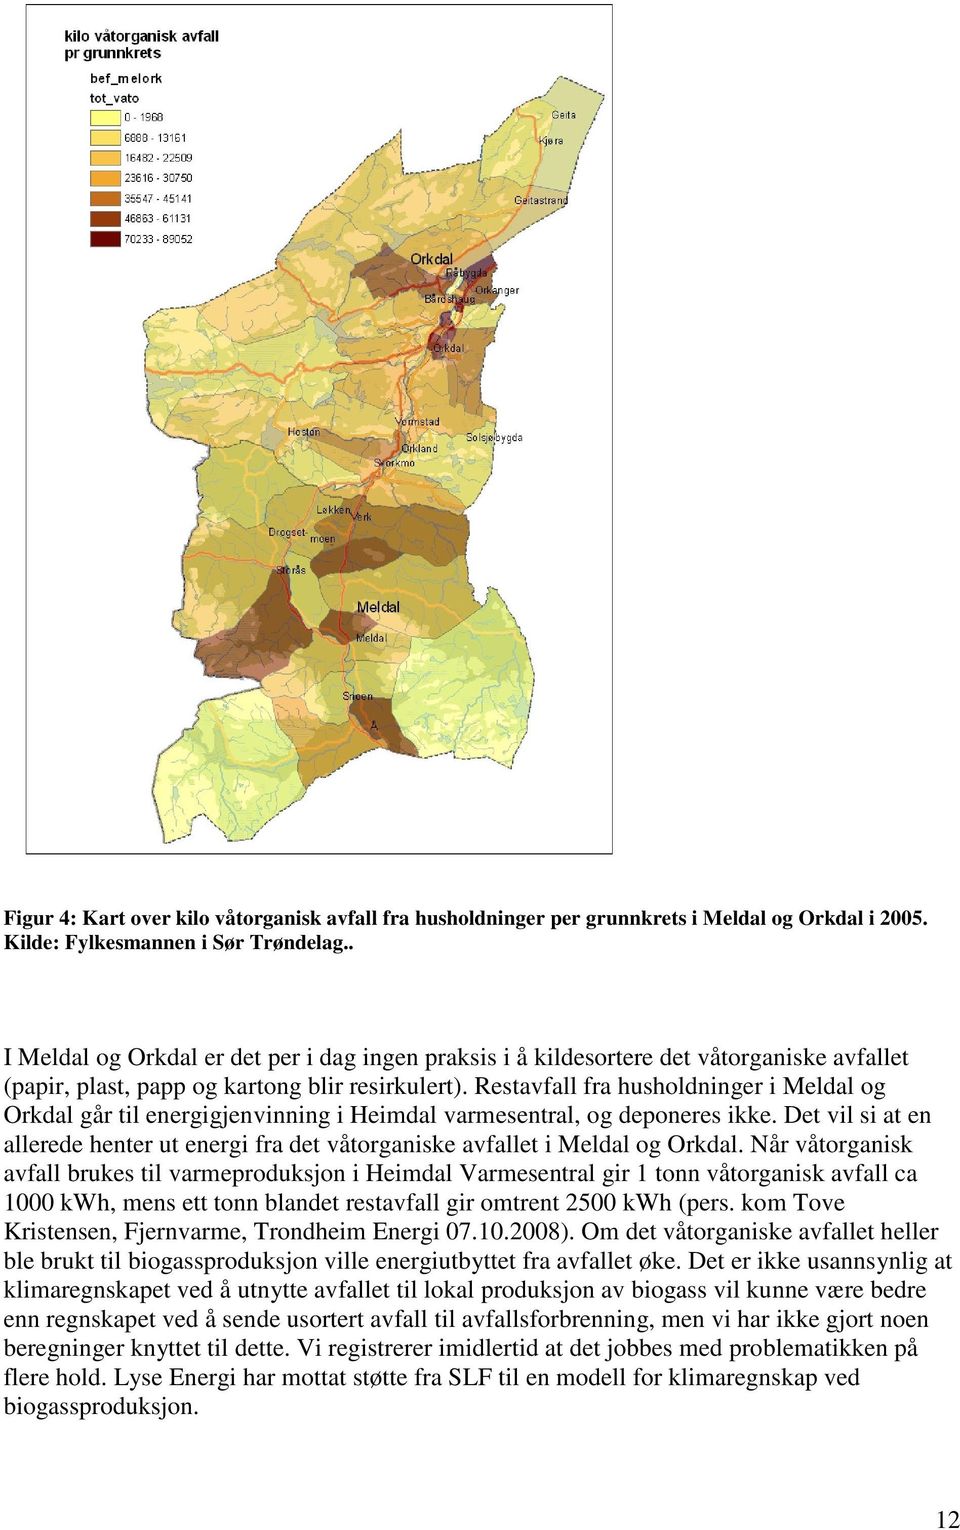 Restavfall fra husholdninger i Meldal og Orkdal går til energigjenvinning i Heimdal varmesentral, og deponeres ikke.